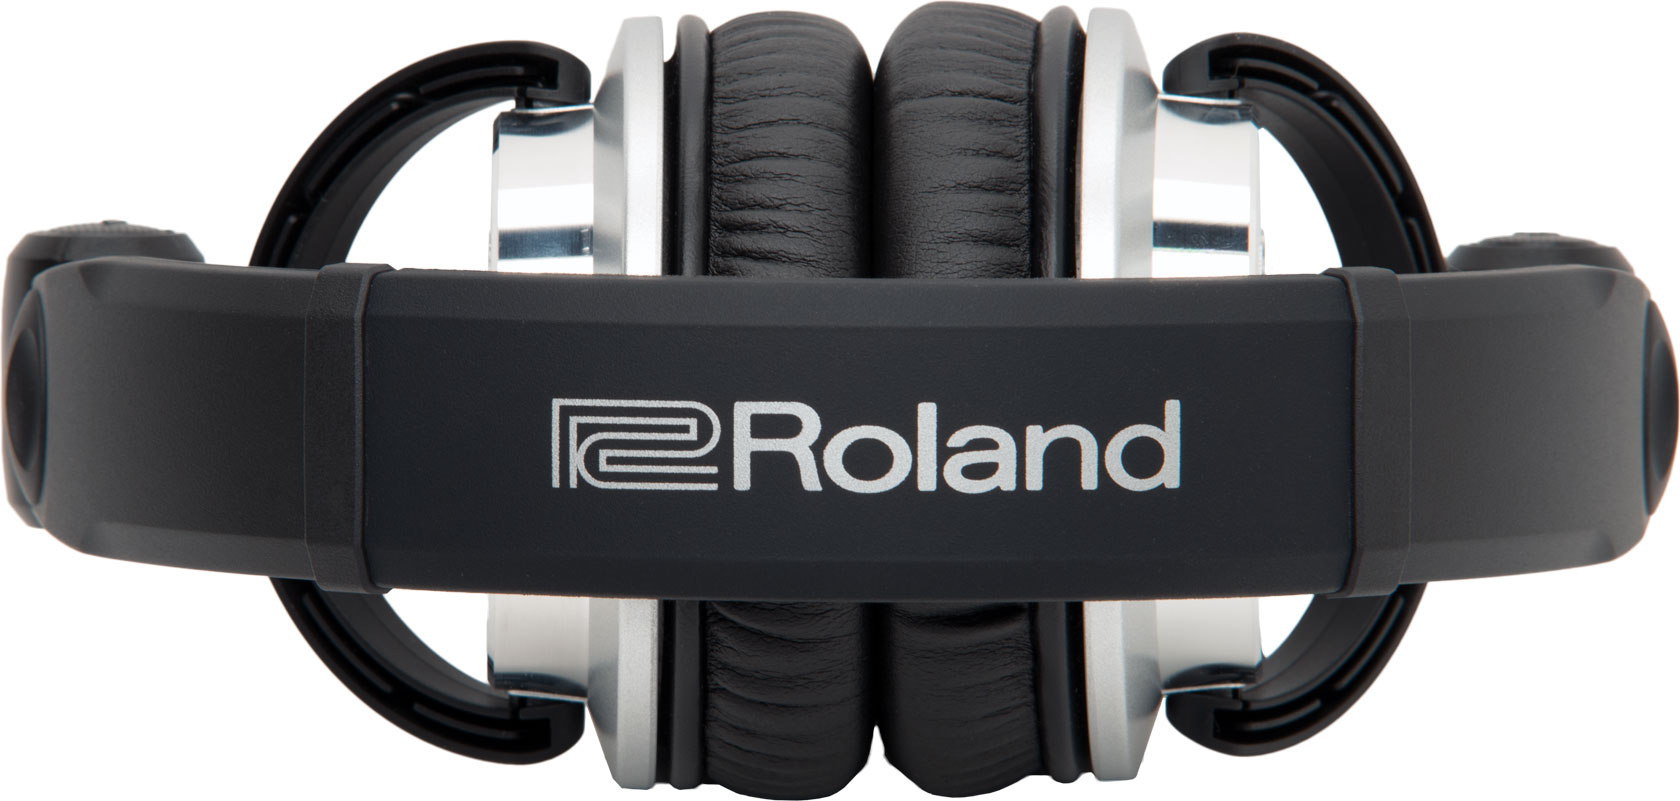 Roland Rh300v - Closed headset - Variation 3